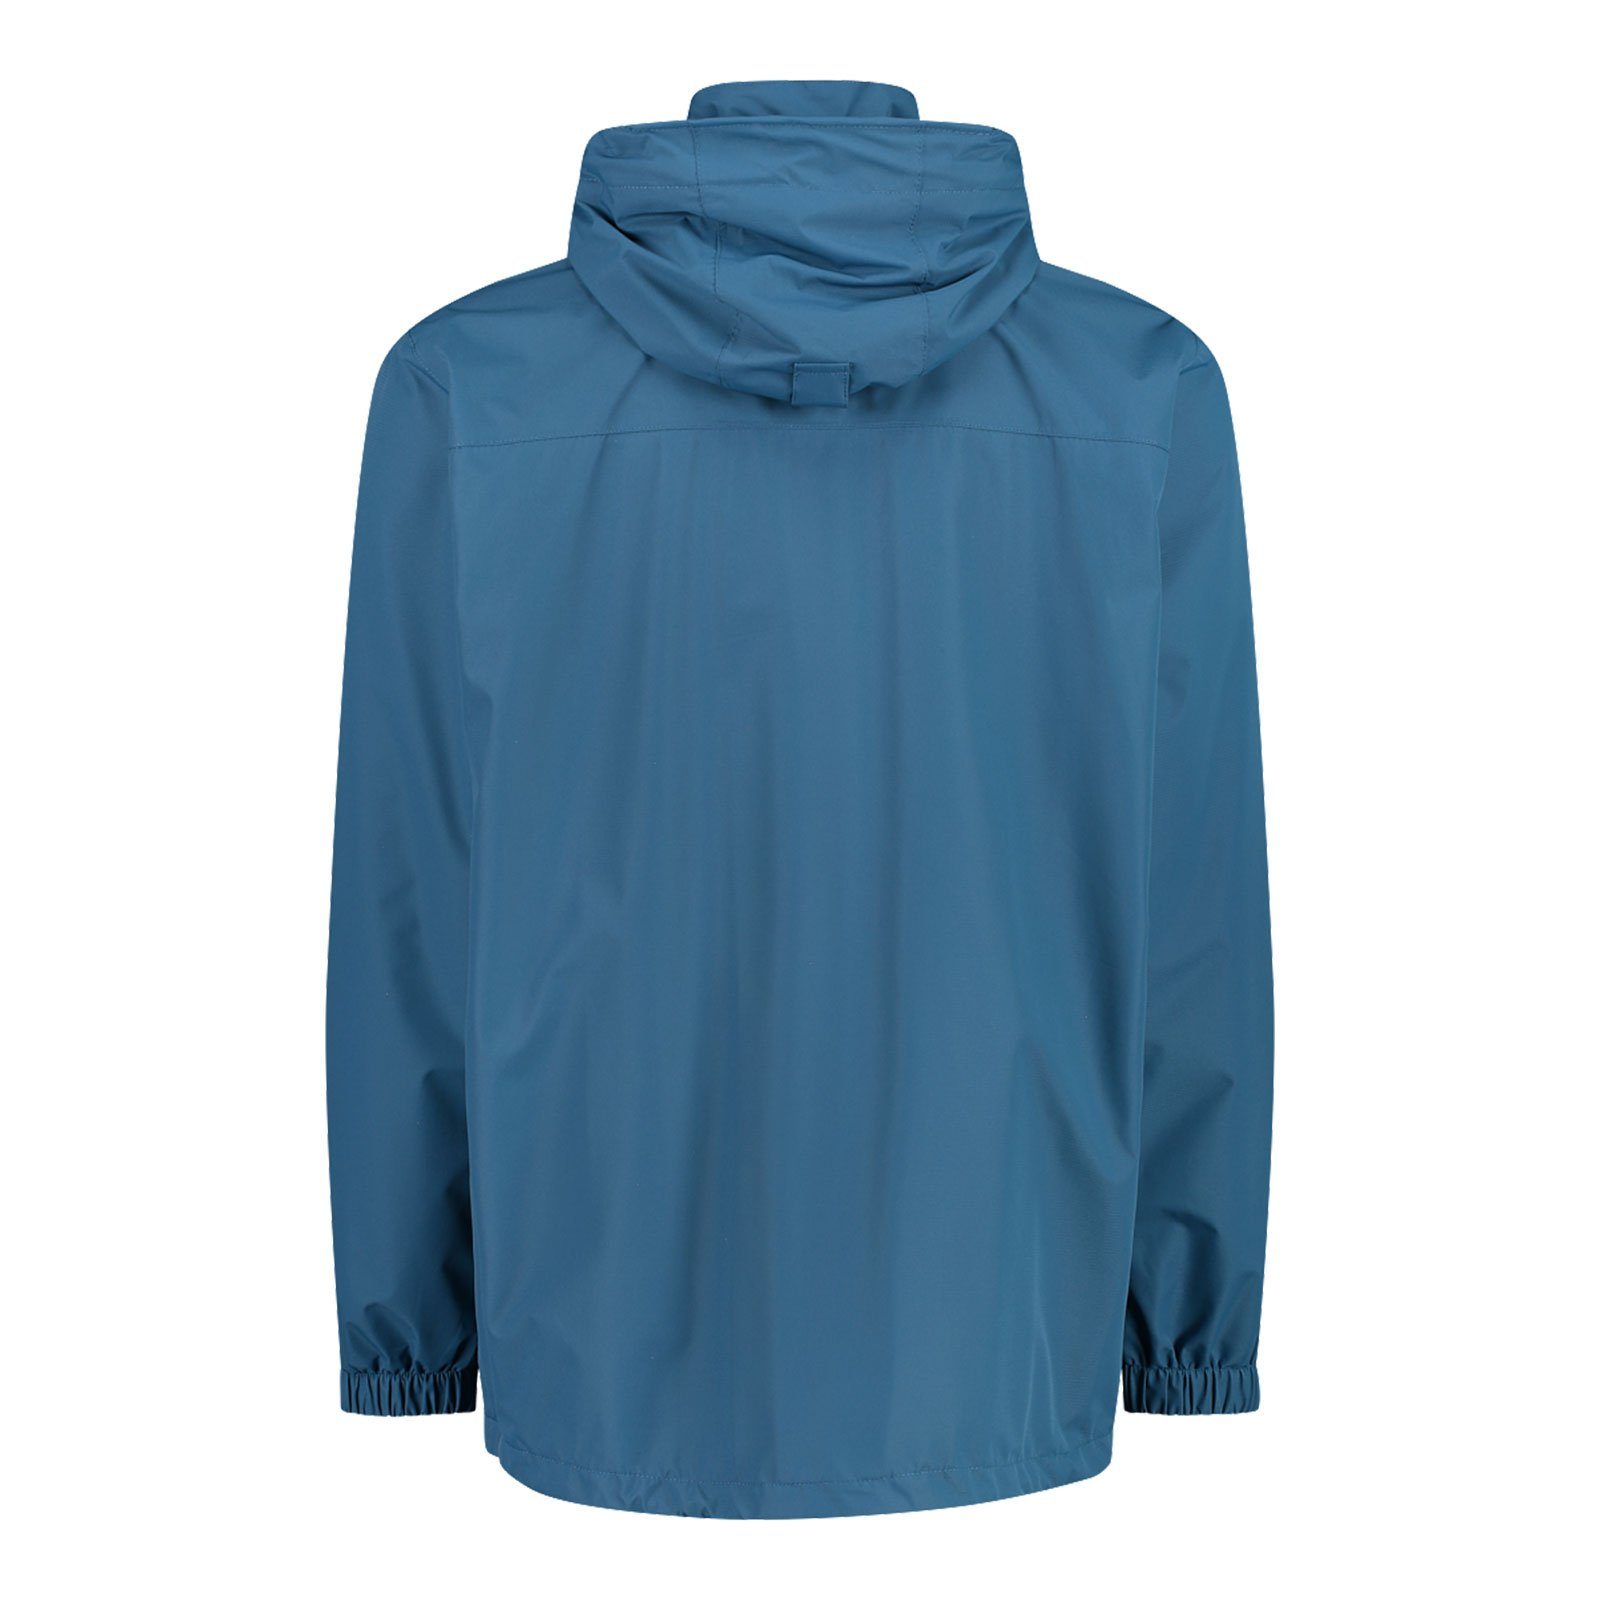 Jacket dusty Verstauen Packtasche M879 Hood mit Zip Man der CMP zum integrierter Regenjacke Jacke blue